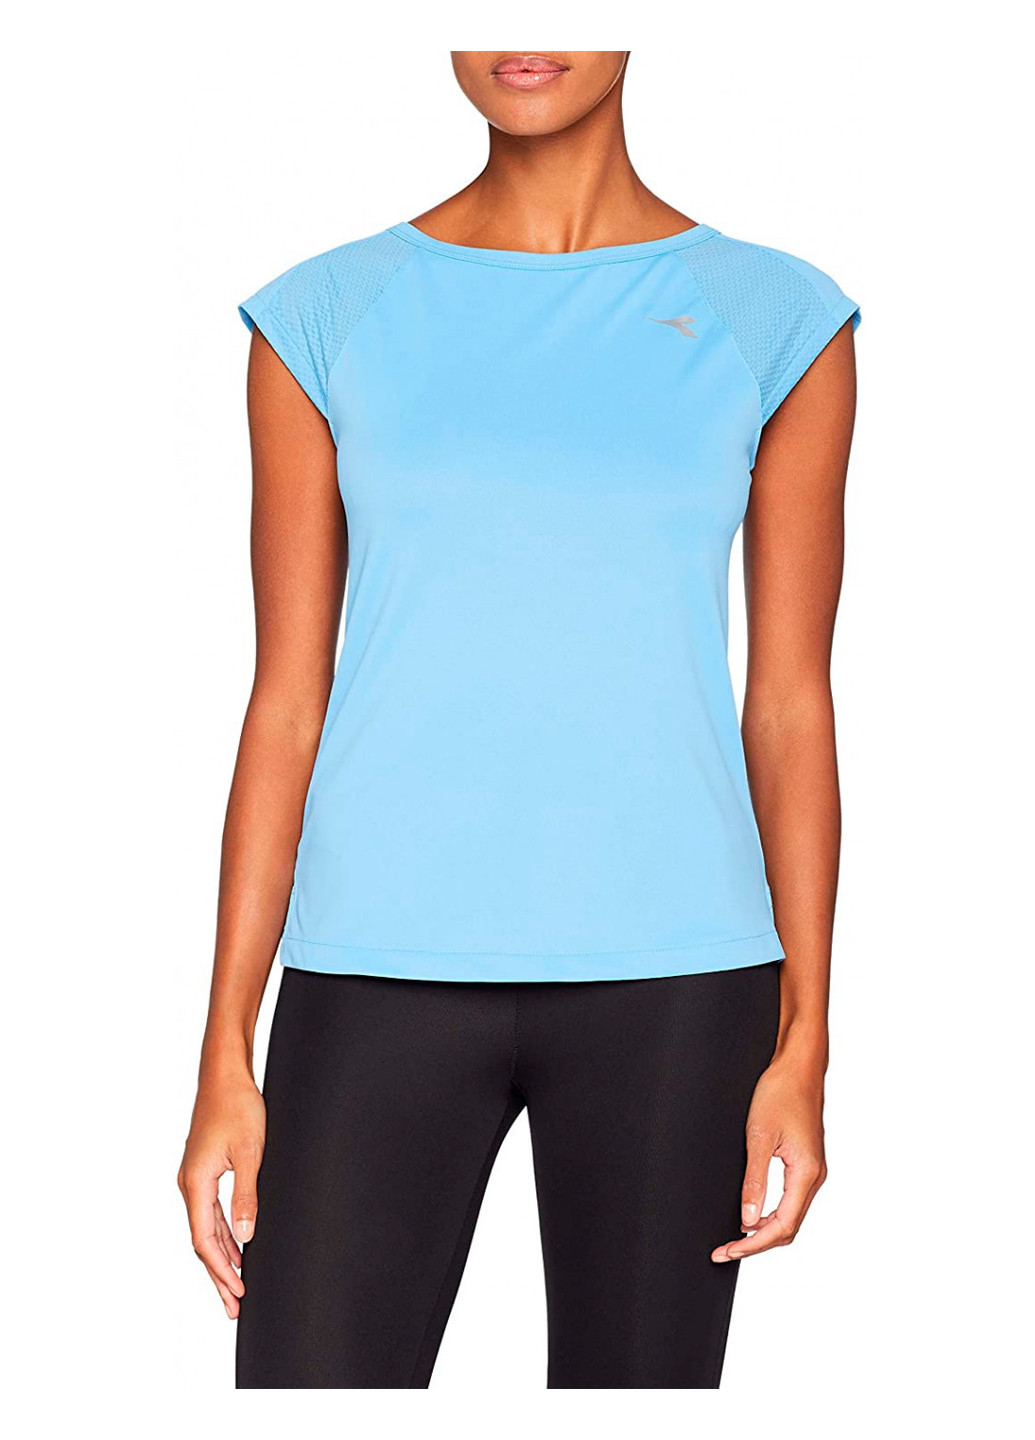 Голубая женская футболка regular fit, s, голубой (102.172947_65183_01) Diadora